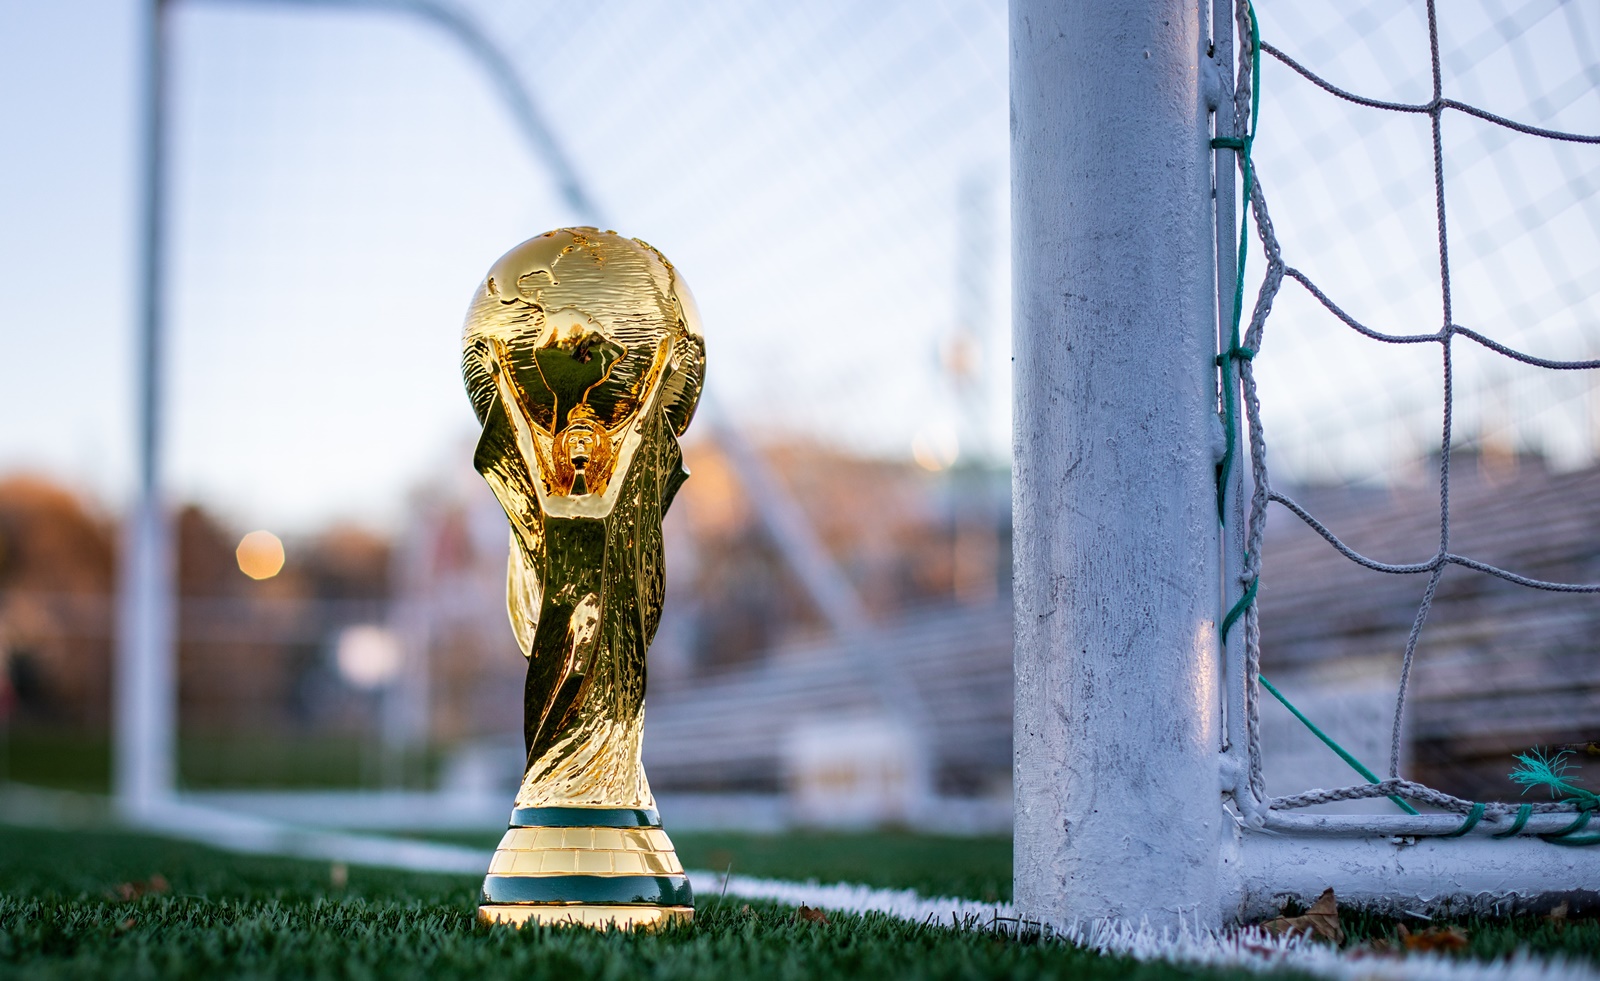 Μουντιάλ 2022 – προημιτελικά: Mόνο 11 παίκτες δεν παίζουν σε ευρωπαϊκούς συλλόγους